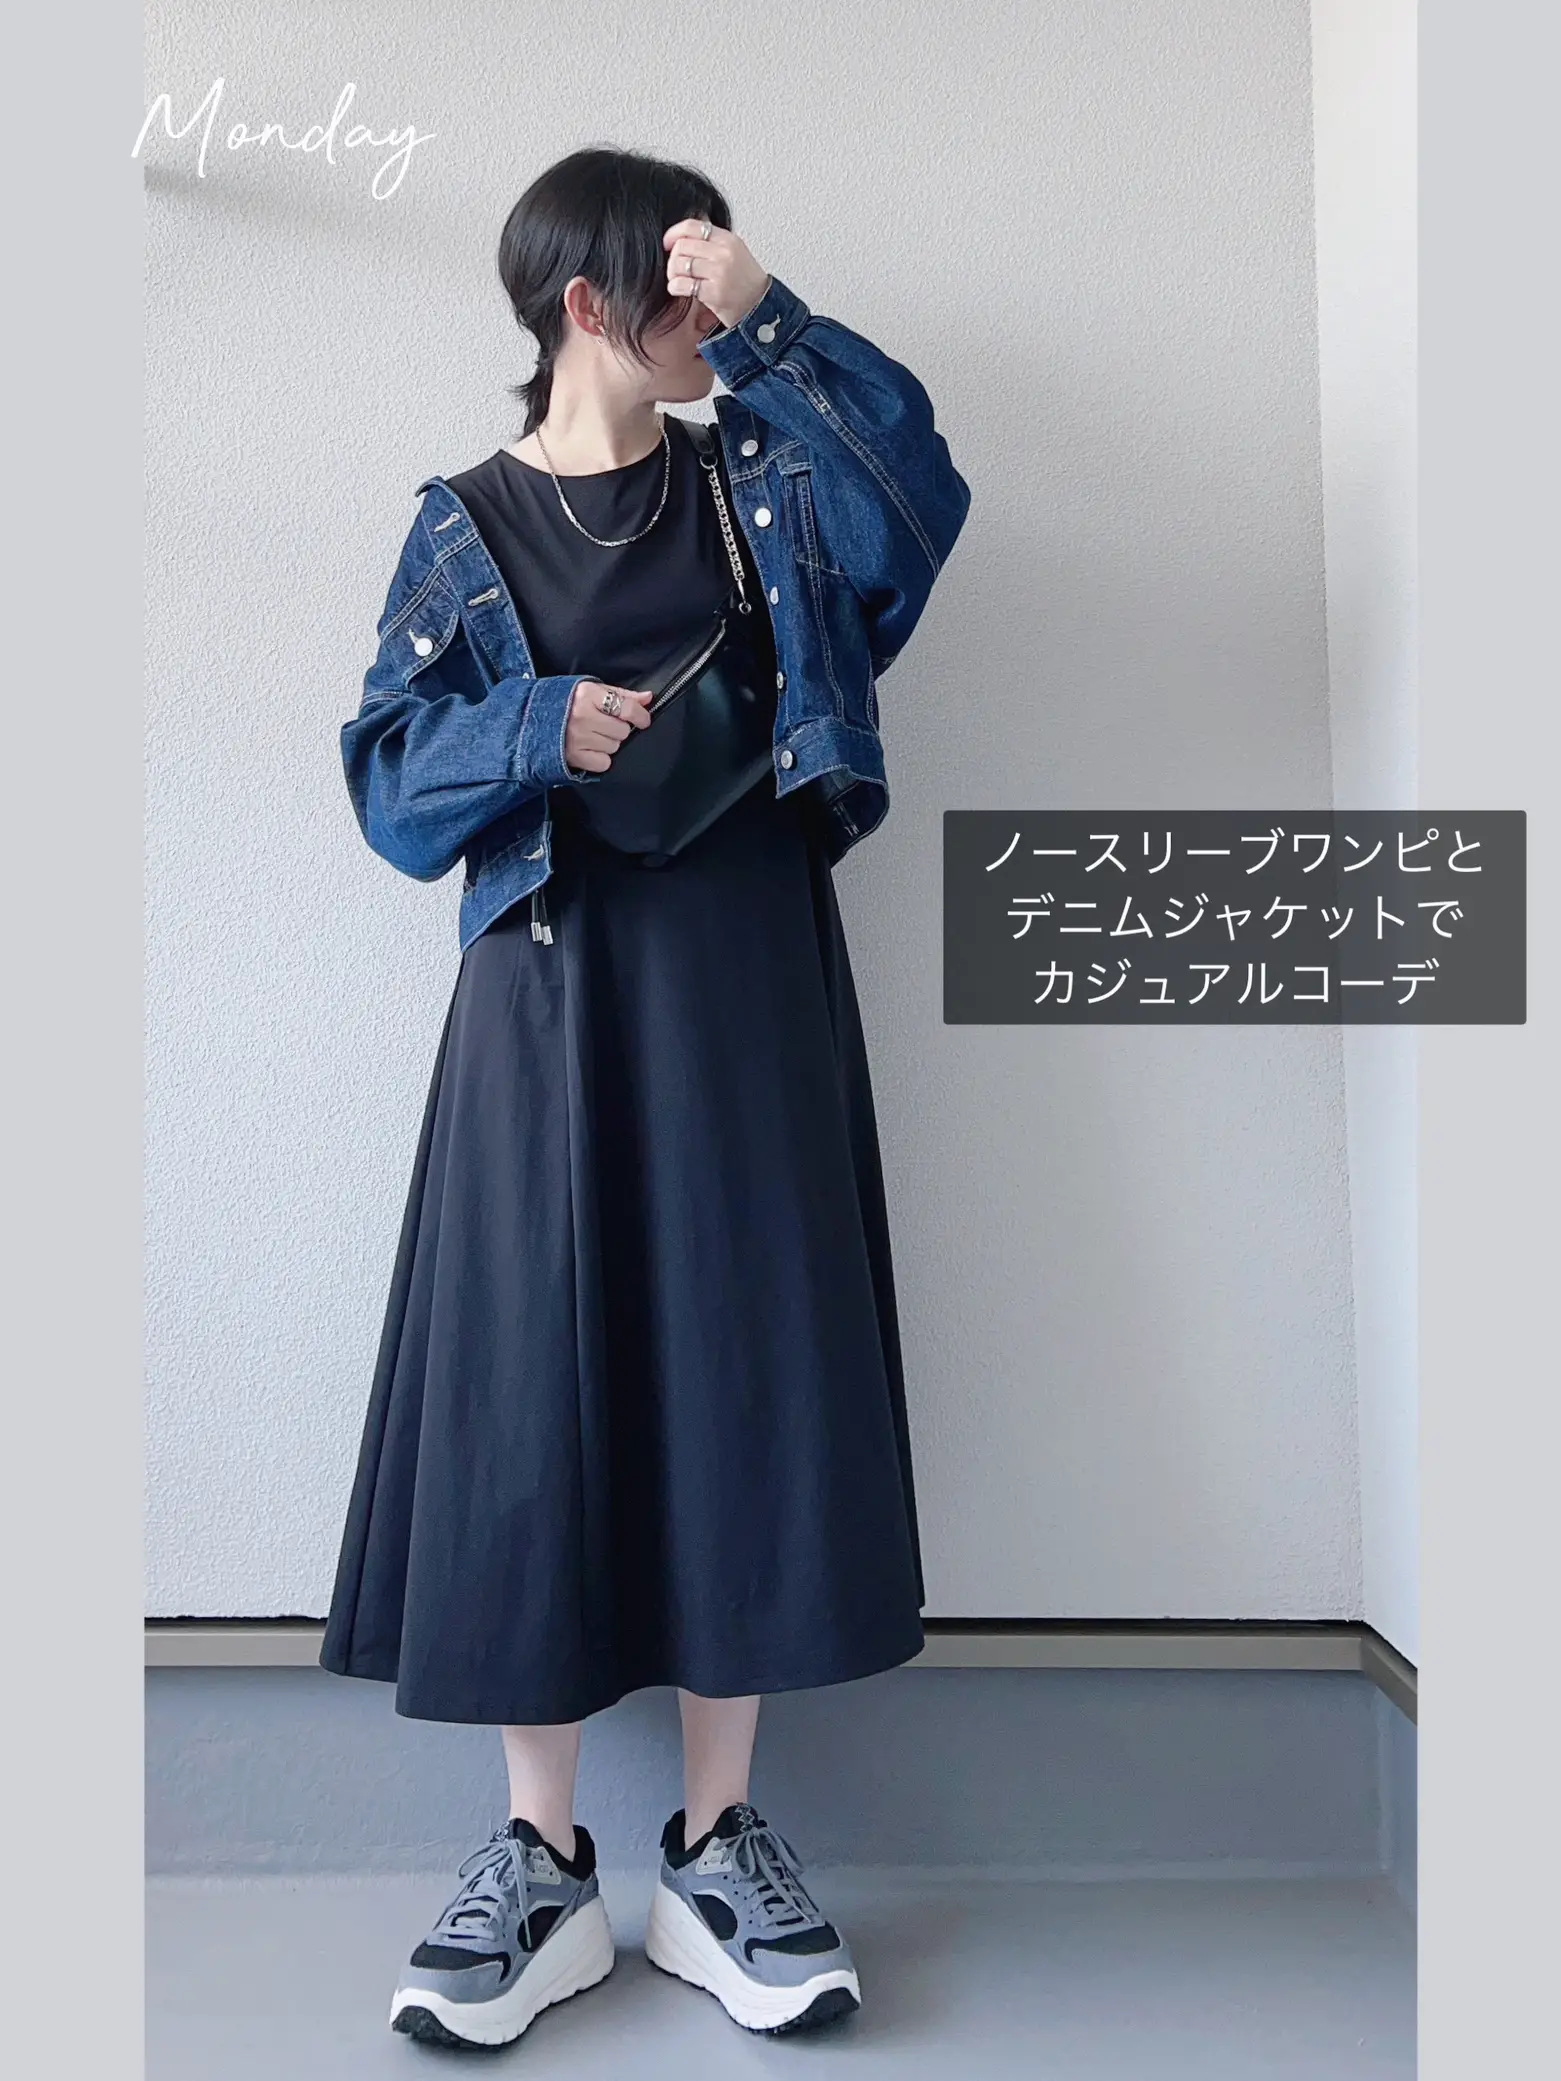 UNIQLO 黒ワンピ3着で一週間コーデ☆ | haruが投稿したフォトブック